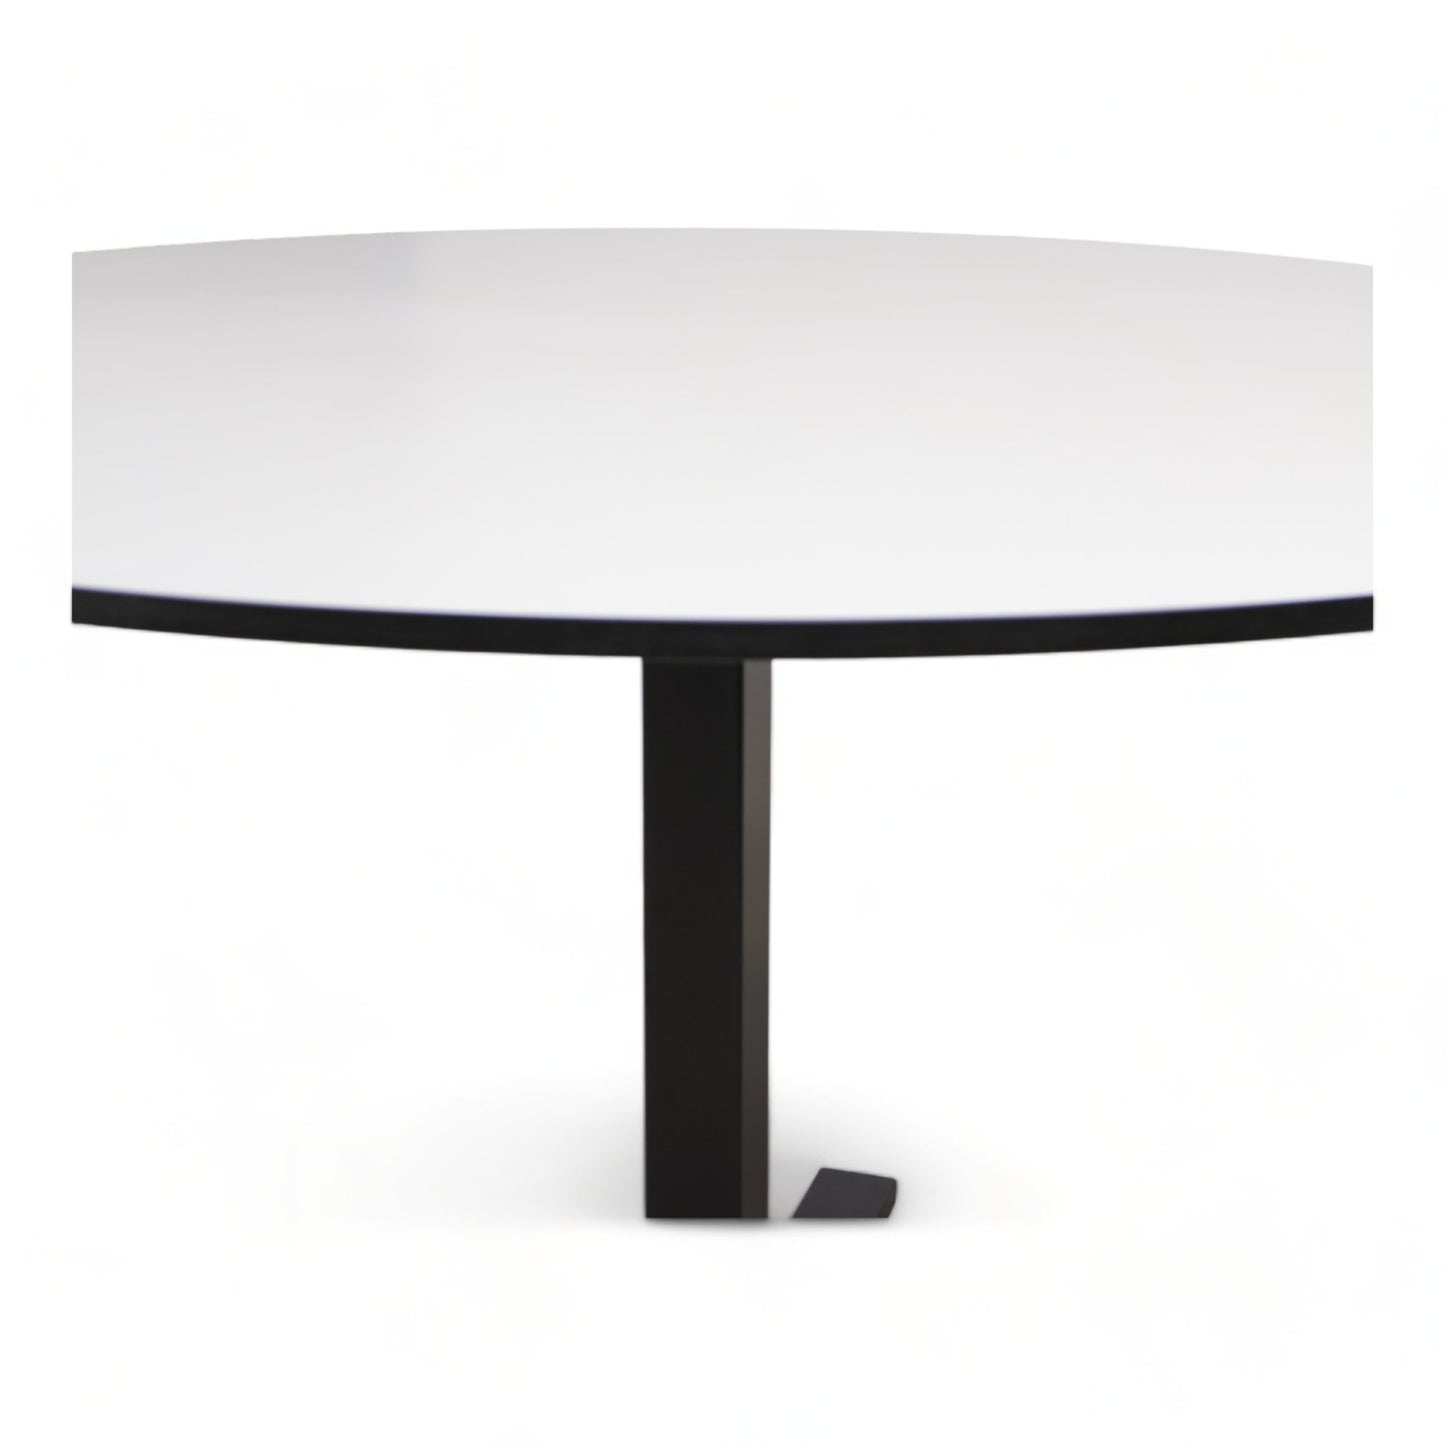 Kvalitetssikret | Rundt (Ø120) bord i hvit/sort